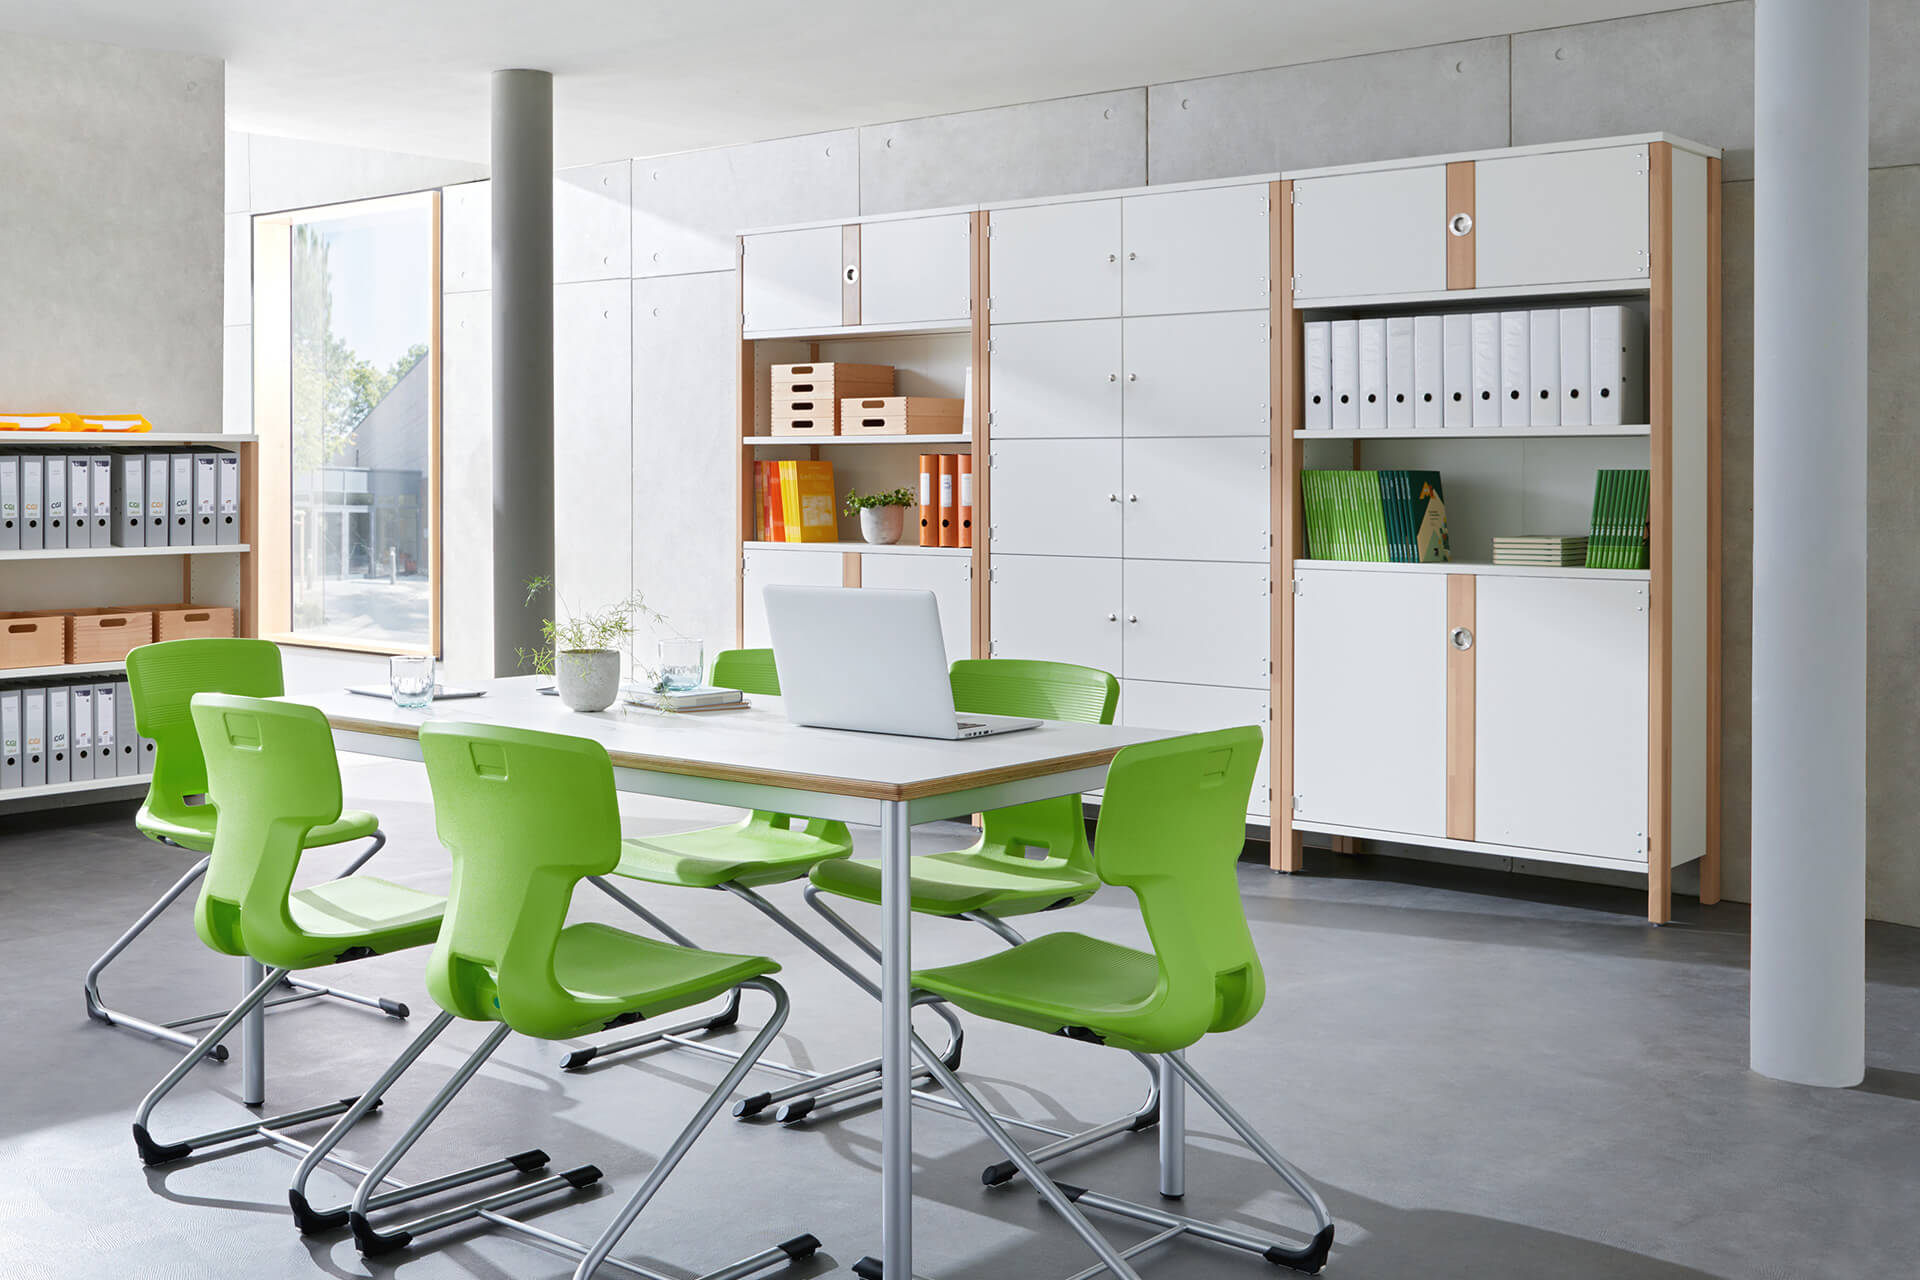 Verwaltungsraum | Schränke | Raum mit Tisch und sechs Schwingstühlen mit grünem Sitz, an der Wand stehen weiße Büroschränke mit Türen und offenem Regalen in der Mitte